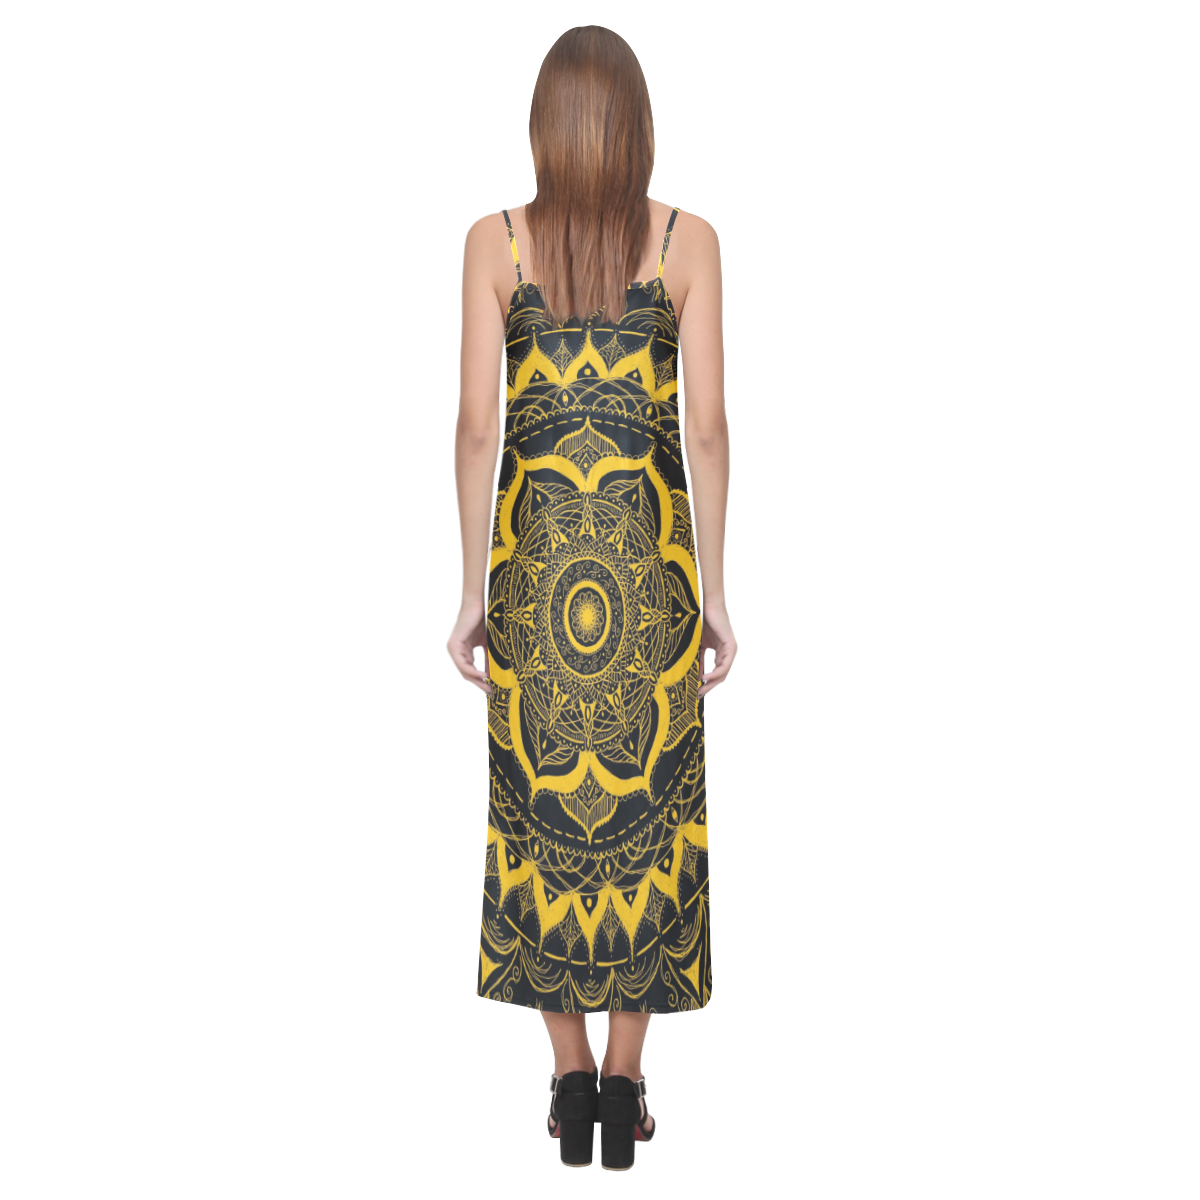 MANDALA SUNSHINE V-Neck Open Fork Long Dress(Model D18)